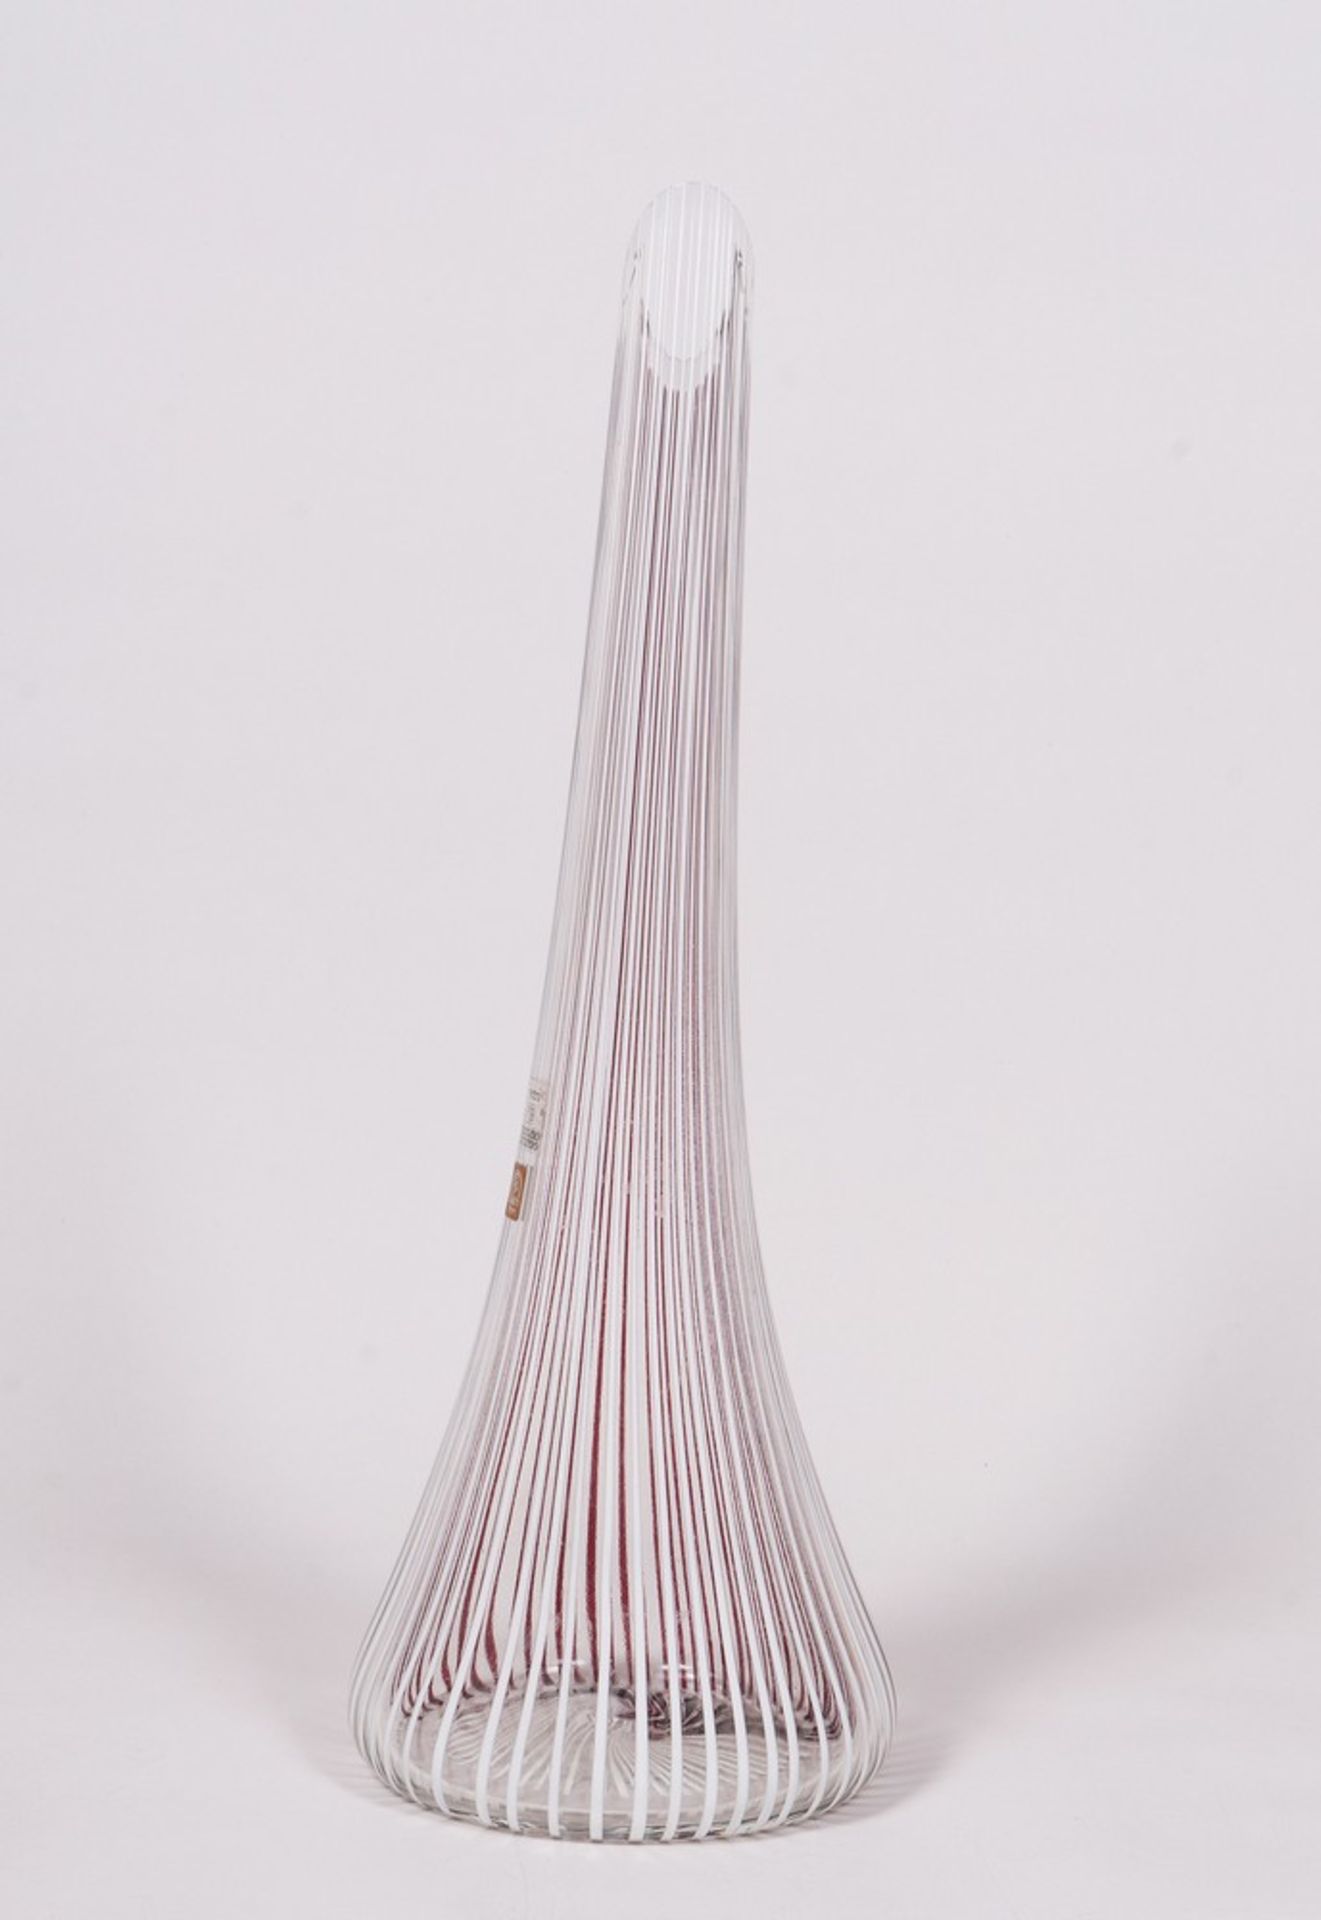 Large studio vase, Licio Zanetti, Murano, 1980s - Image 3 of 4